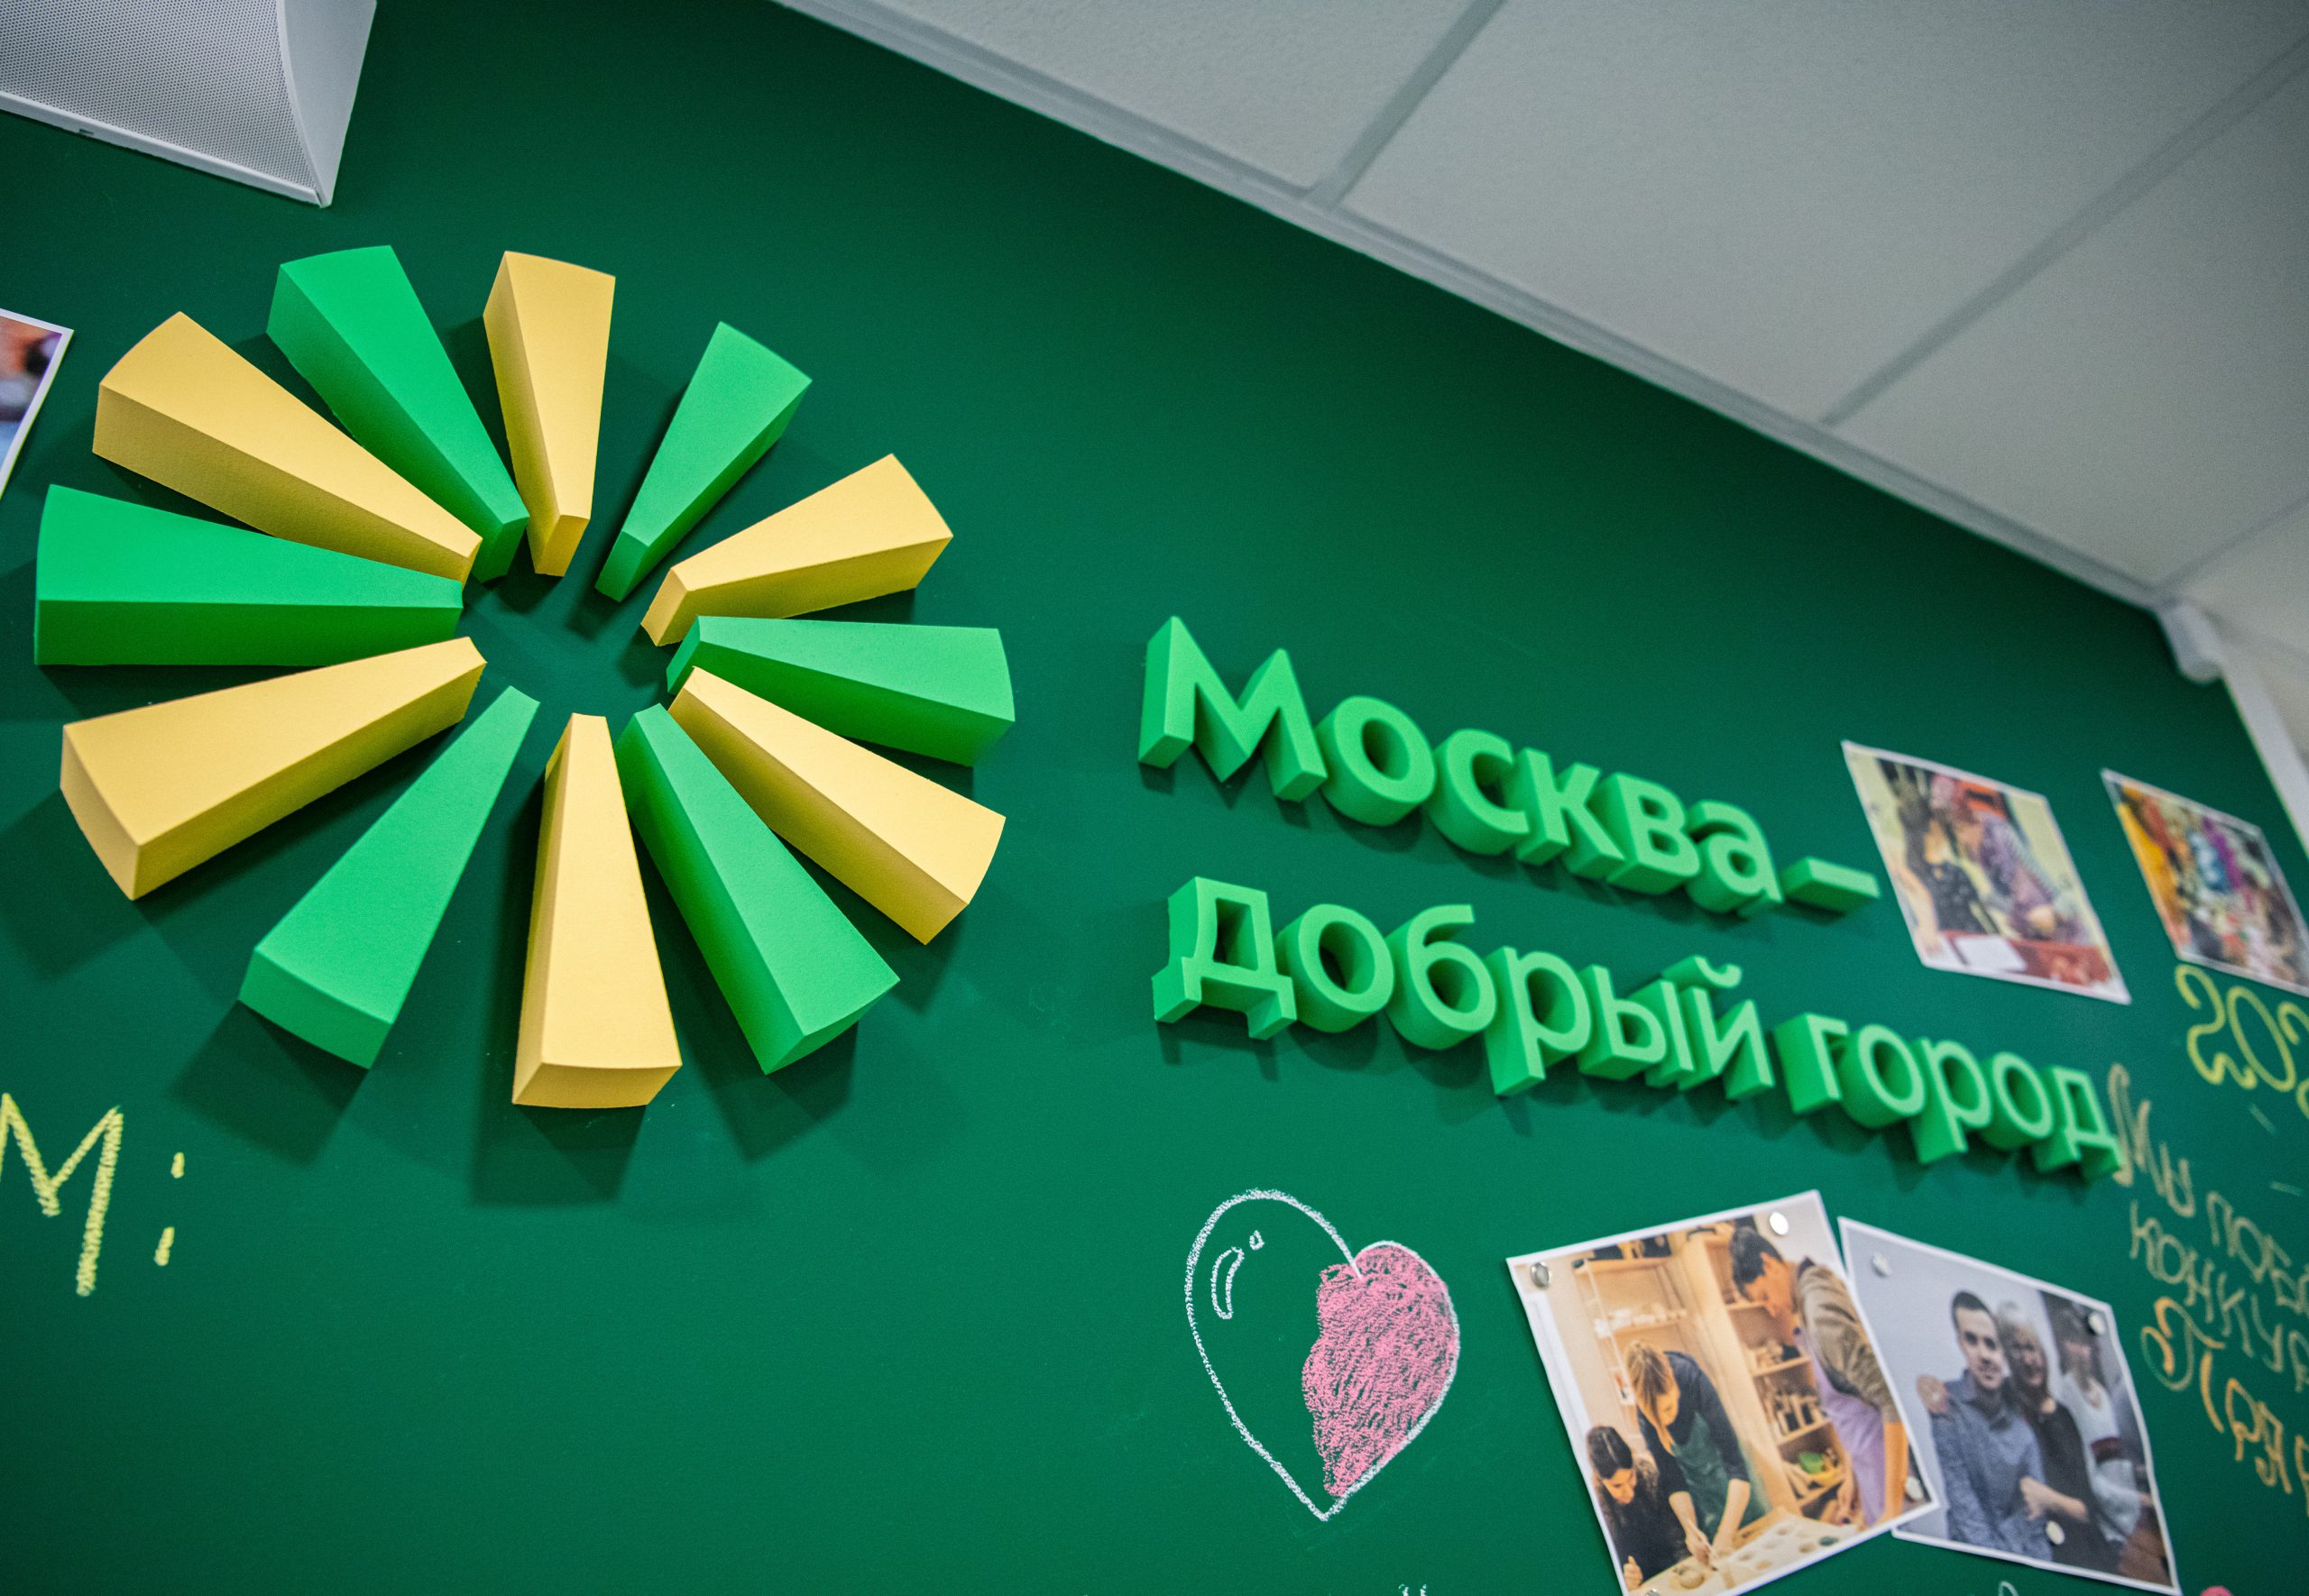 Москва предоставит социально ориентированным НКО-победителям тренировочные квартиры